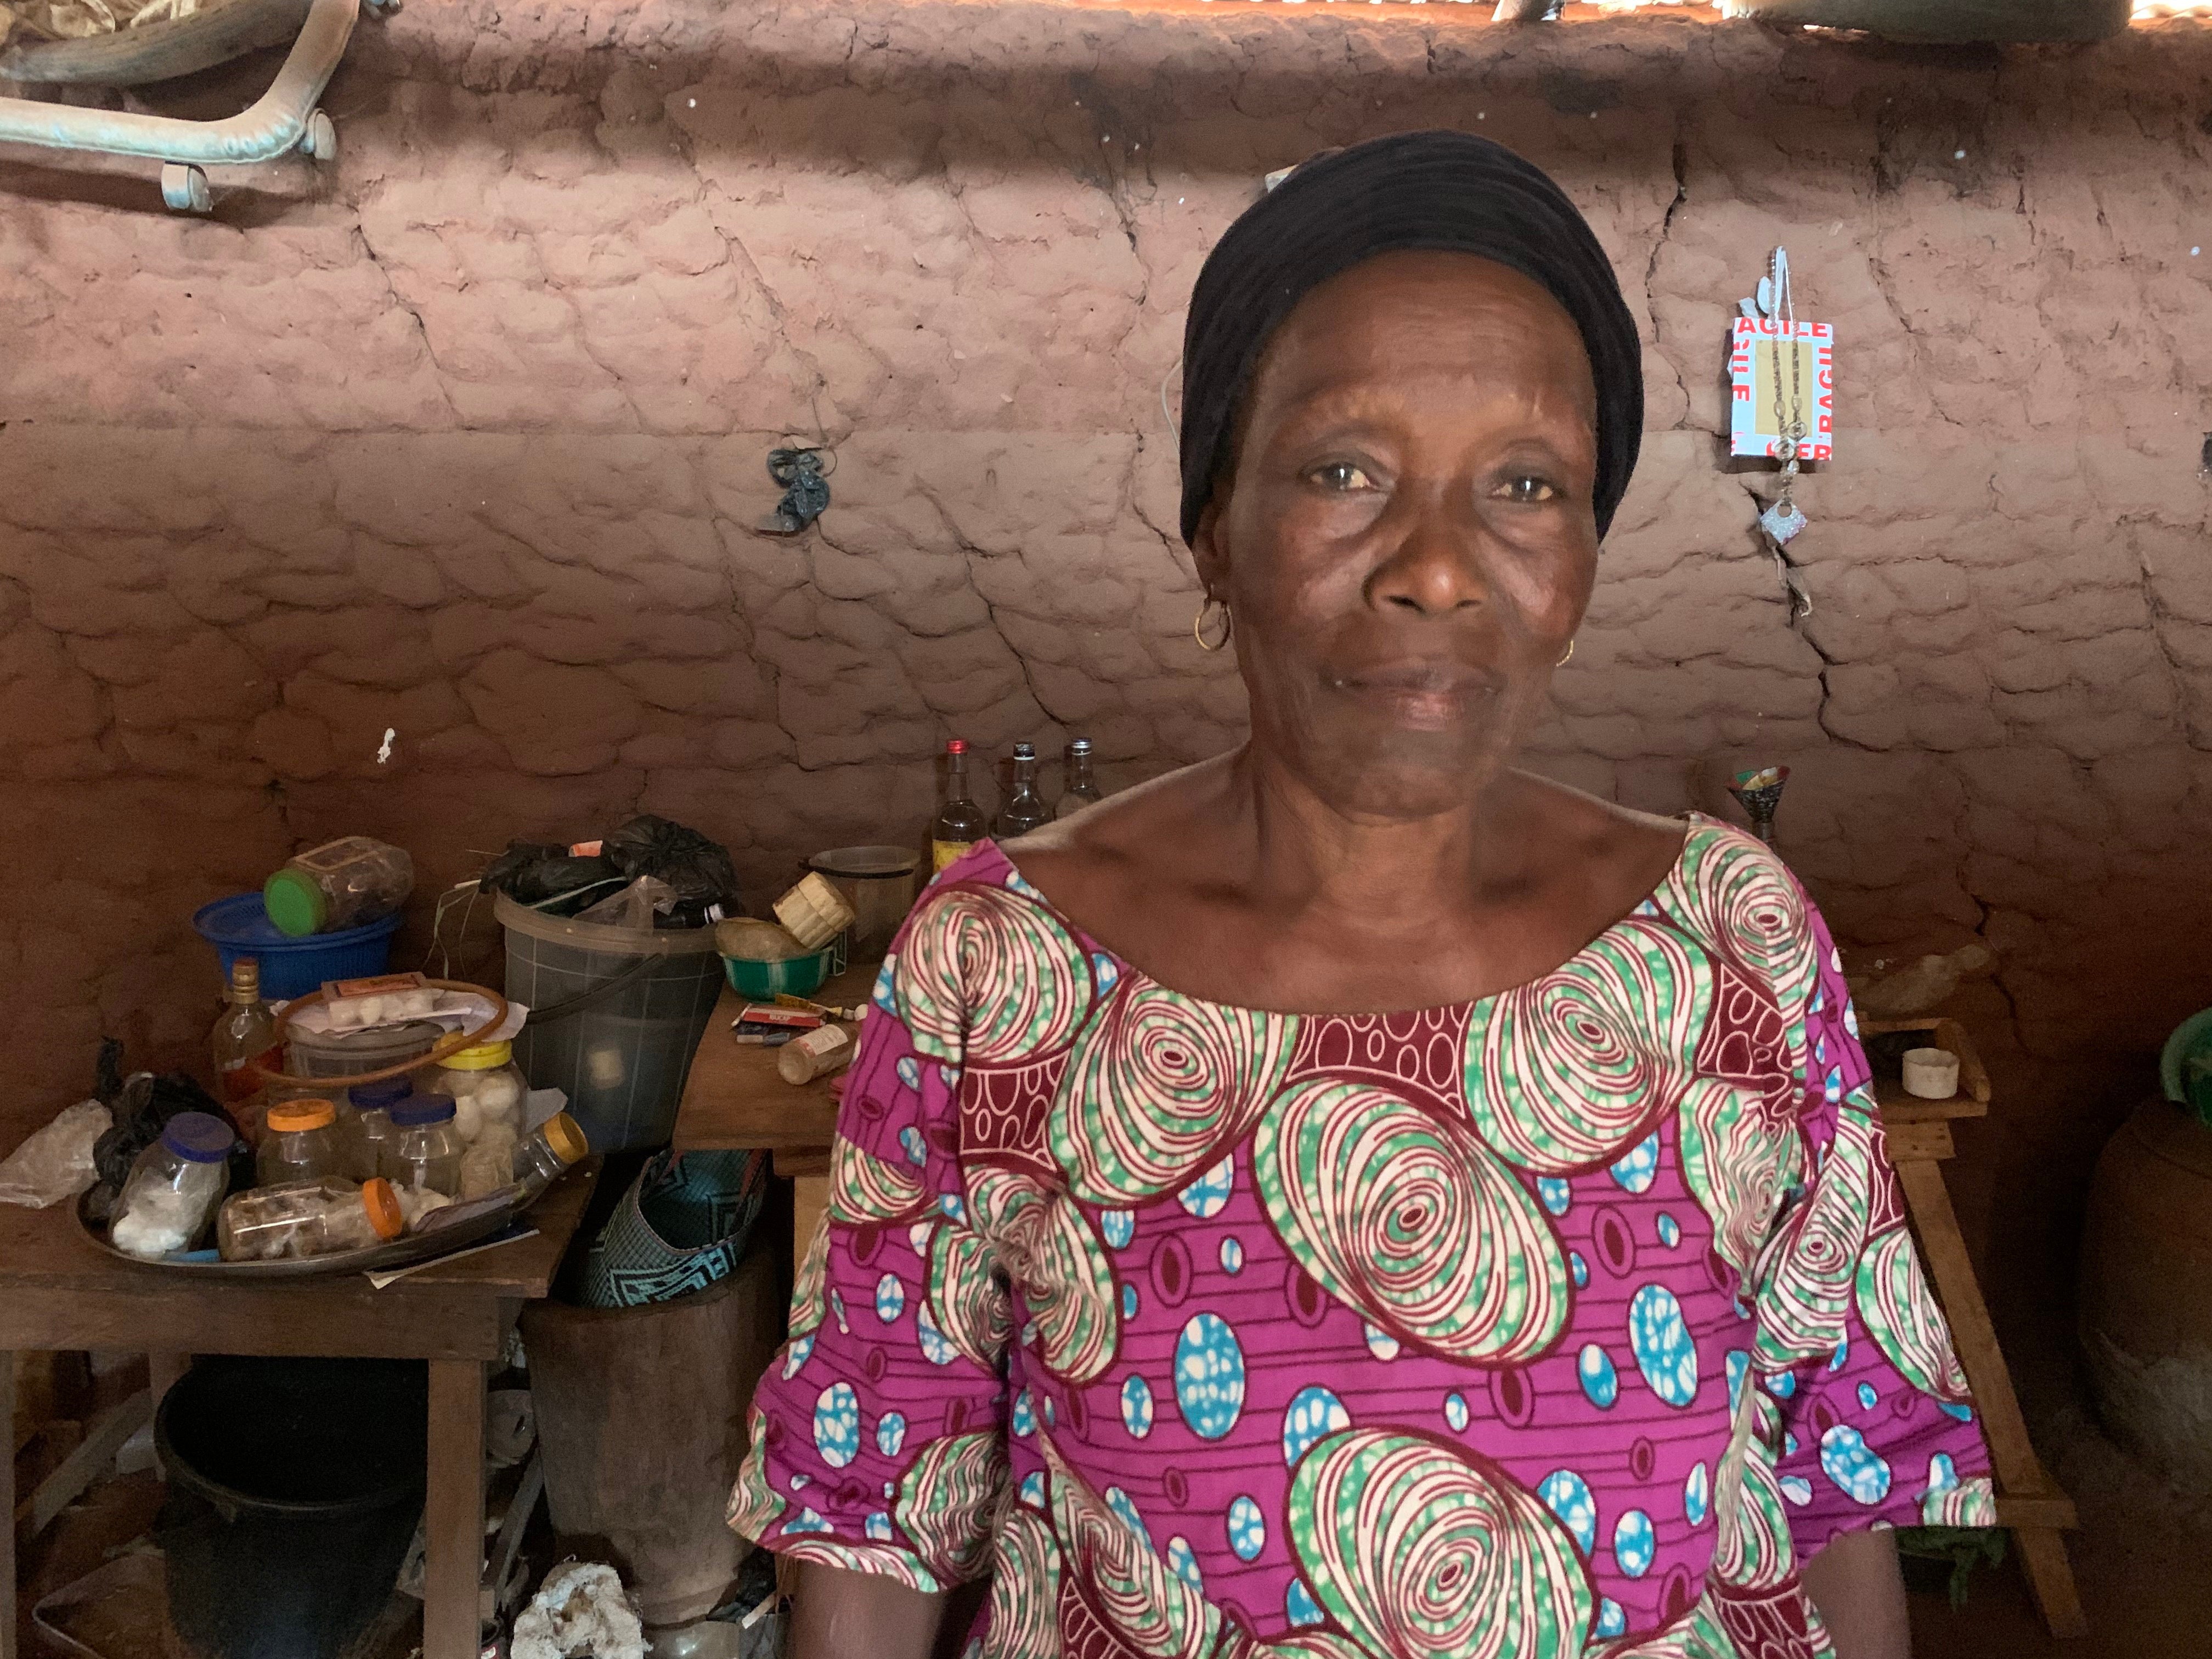 Ayebeleyi Dahoui, 72, says her Amazon grandmother, Adana, preferred fighting with her hands